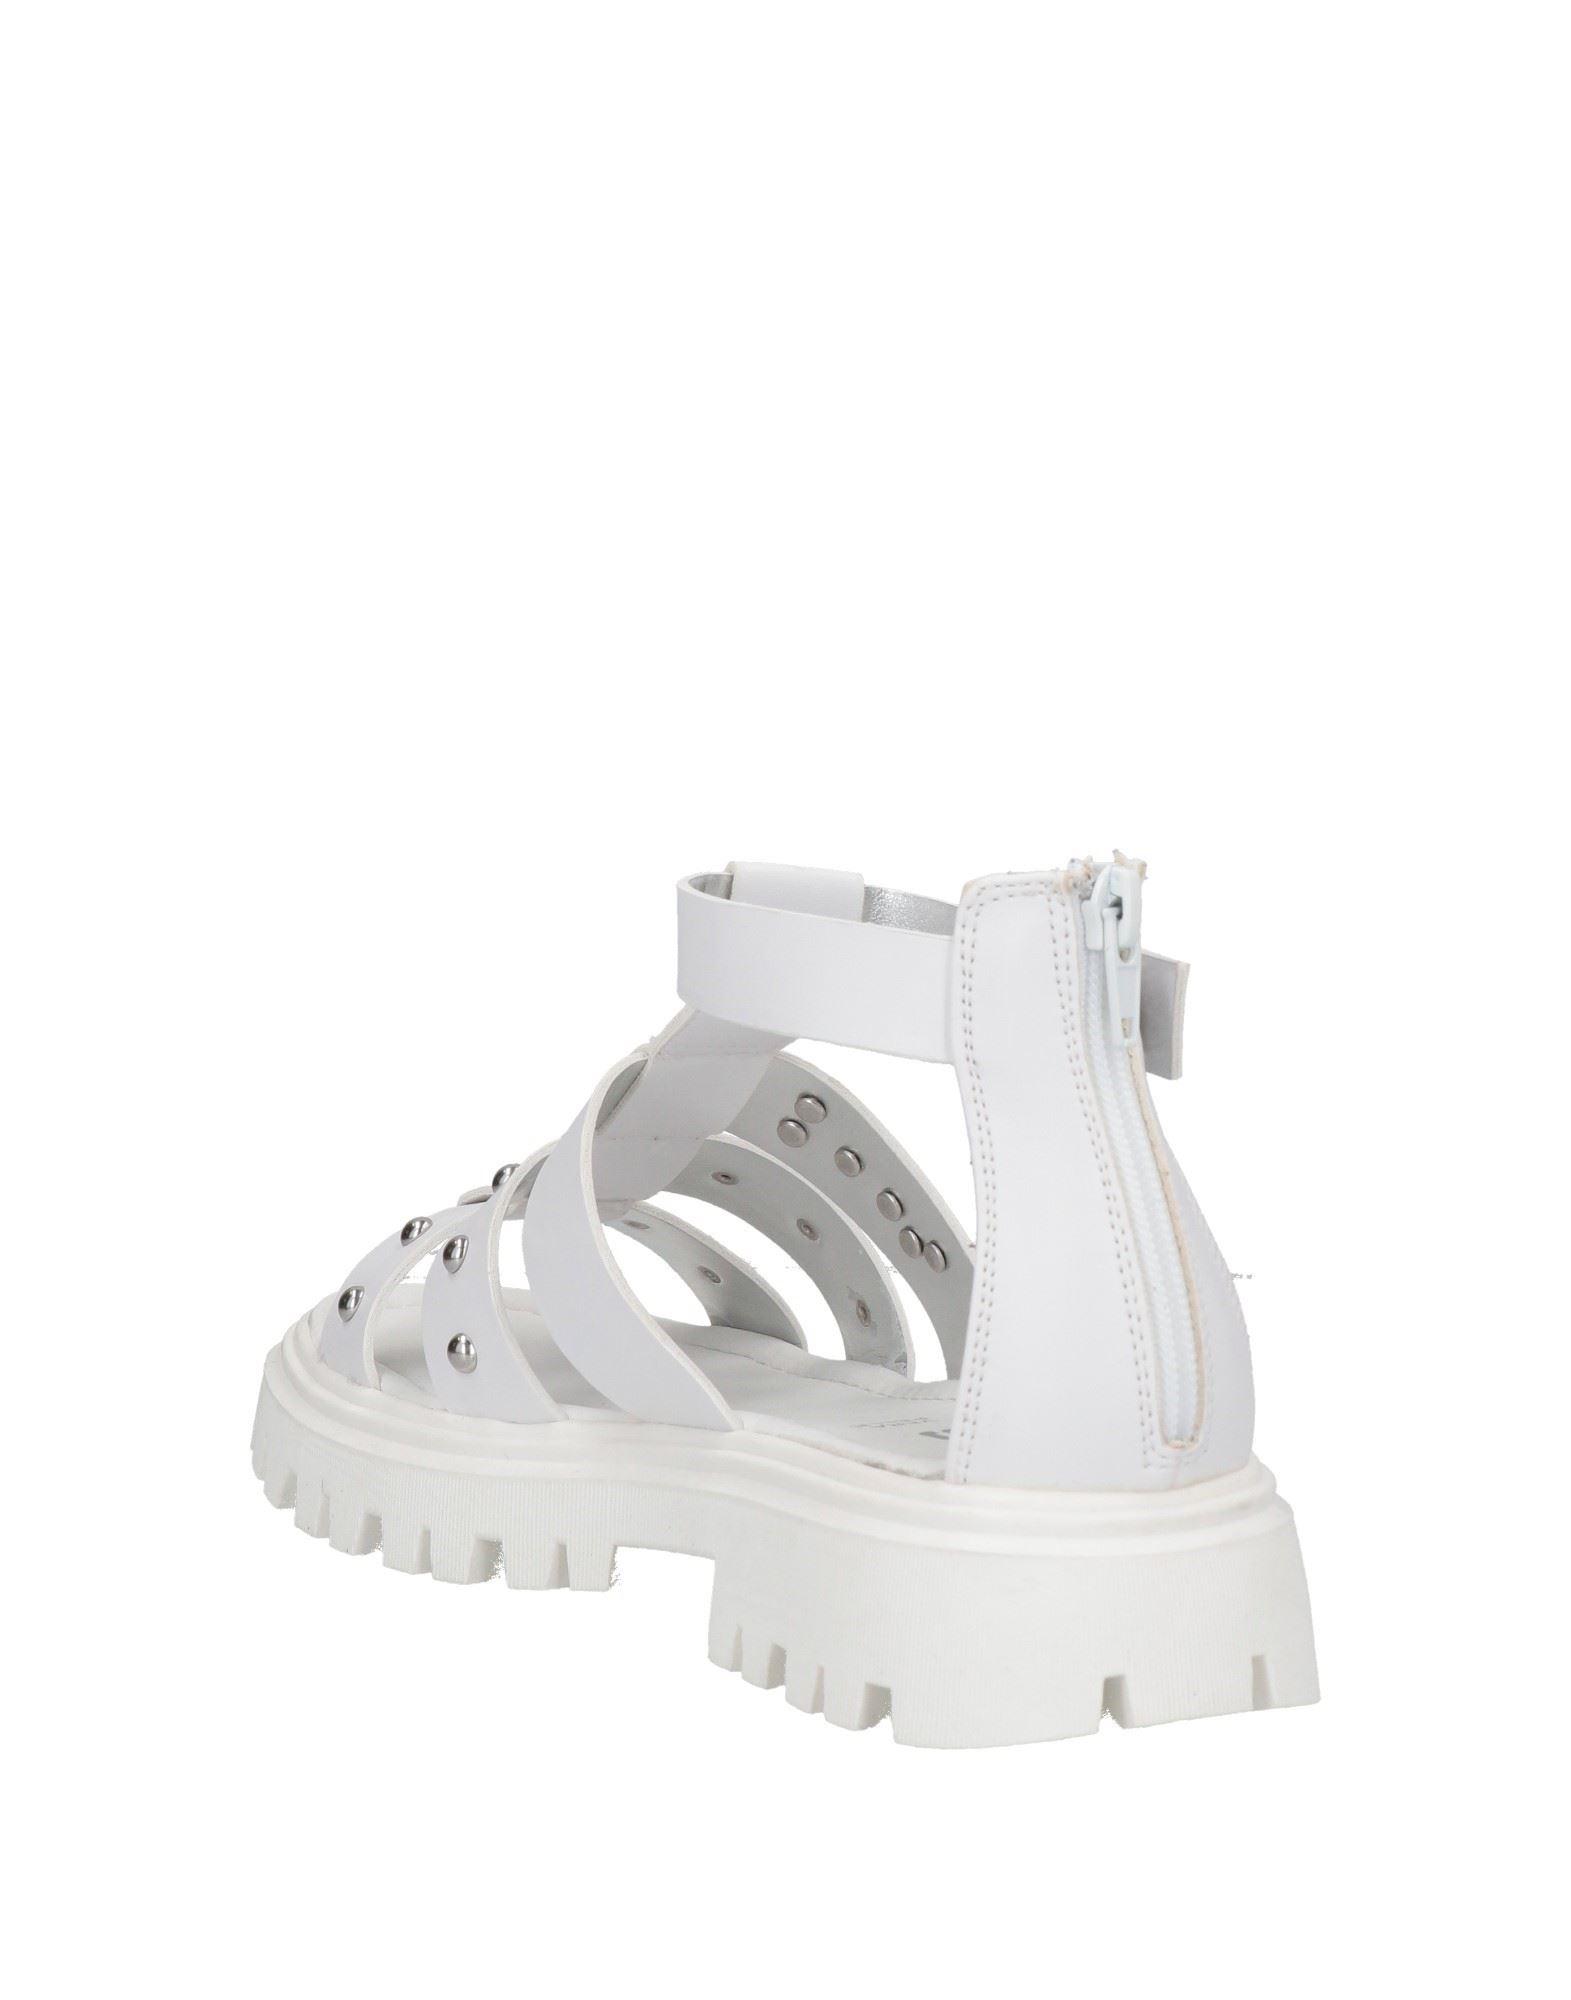 Cesare Paciotti Sandals in White | Lyst